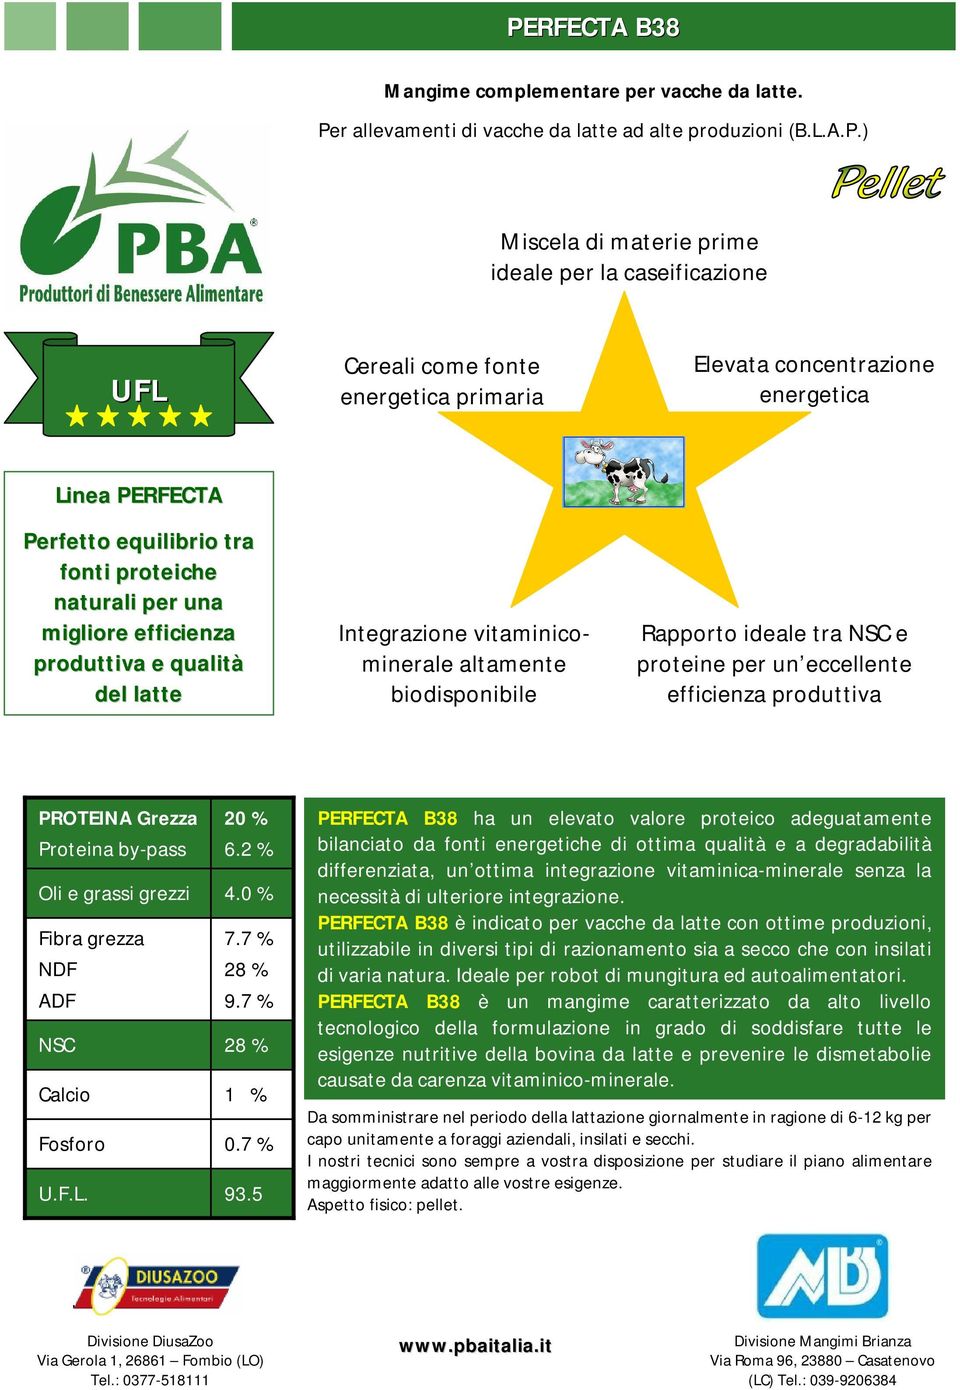 vitaminicominerale altamente biodisponibile Rapporto ideale tra e proteine per un eccellente efficienza produttiva PROTEINA Grezza 20 % 6.2 % 4.0 % 7.7 % 28 % 9.7 % 28 % 1 % 0.7 % 93.